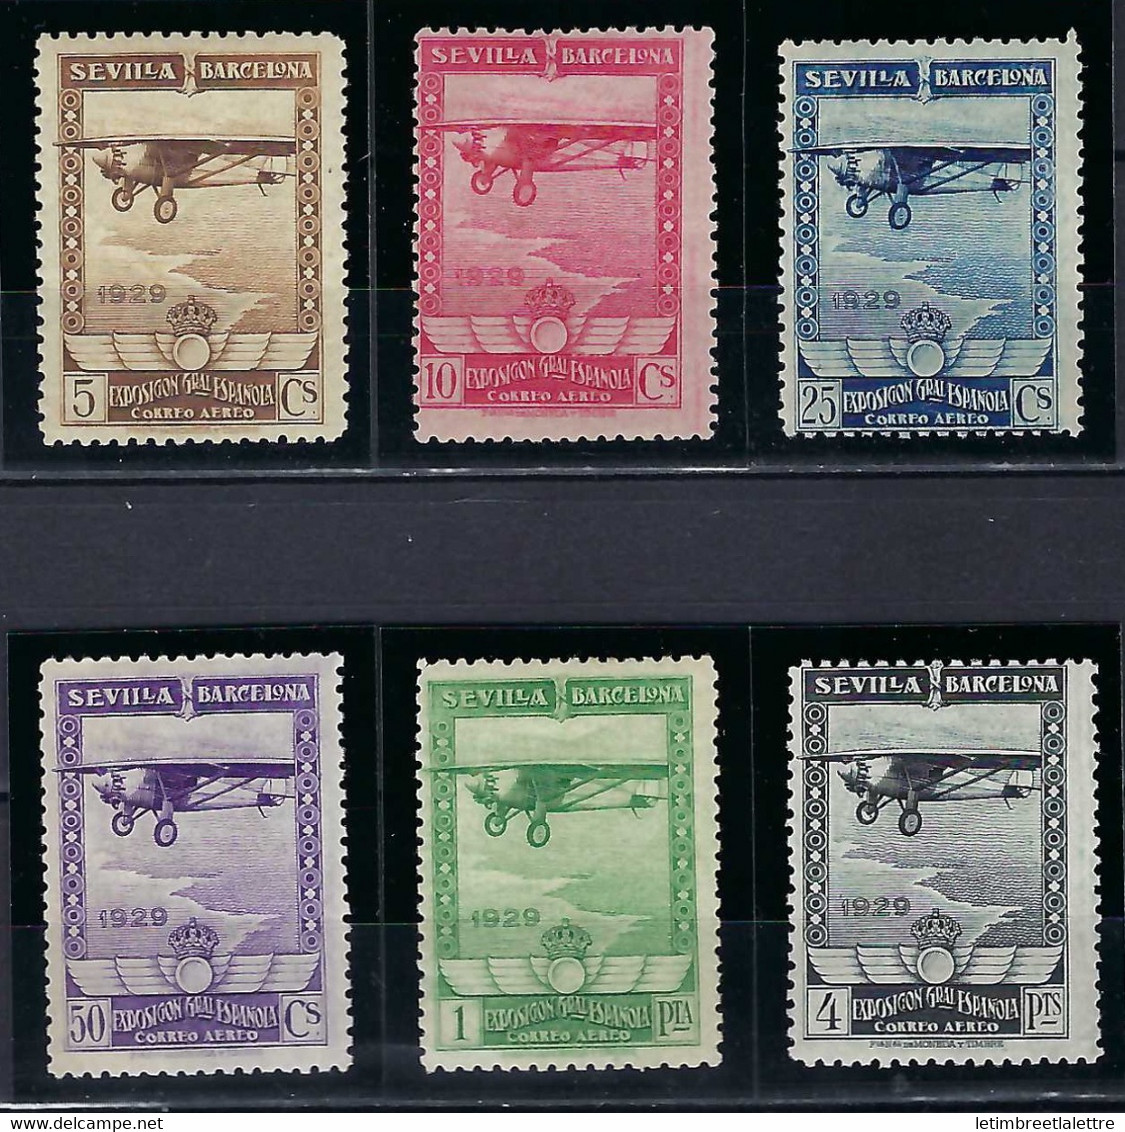 ⭐ Espagne - Poste Aérienne - YT N° 31 à 36 * - Neuf Avec Charnière - 1929 ⭐ - Unused Stamps